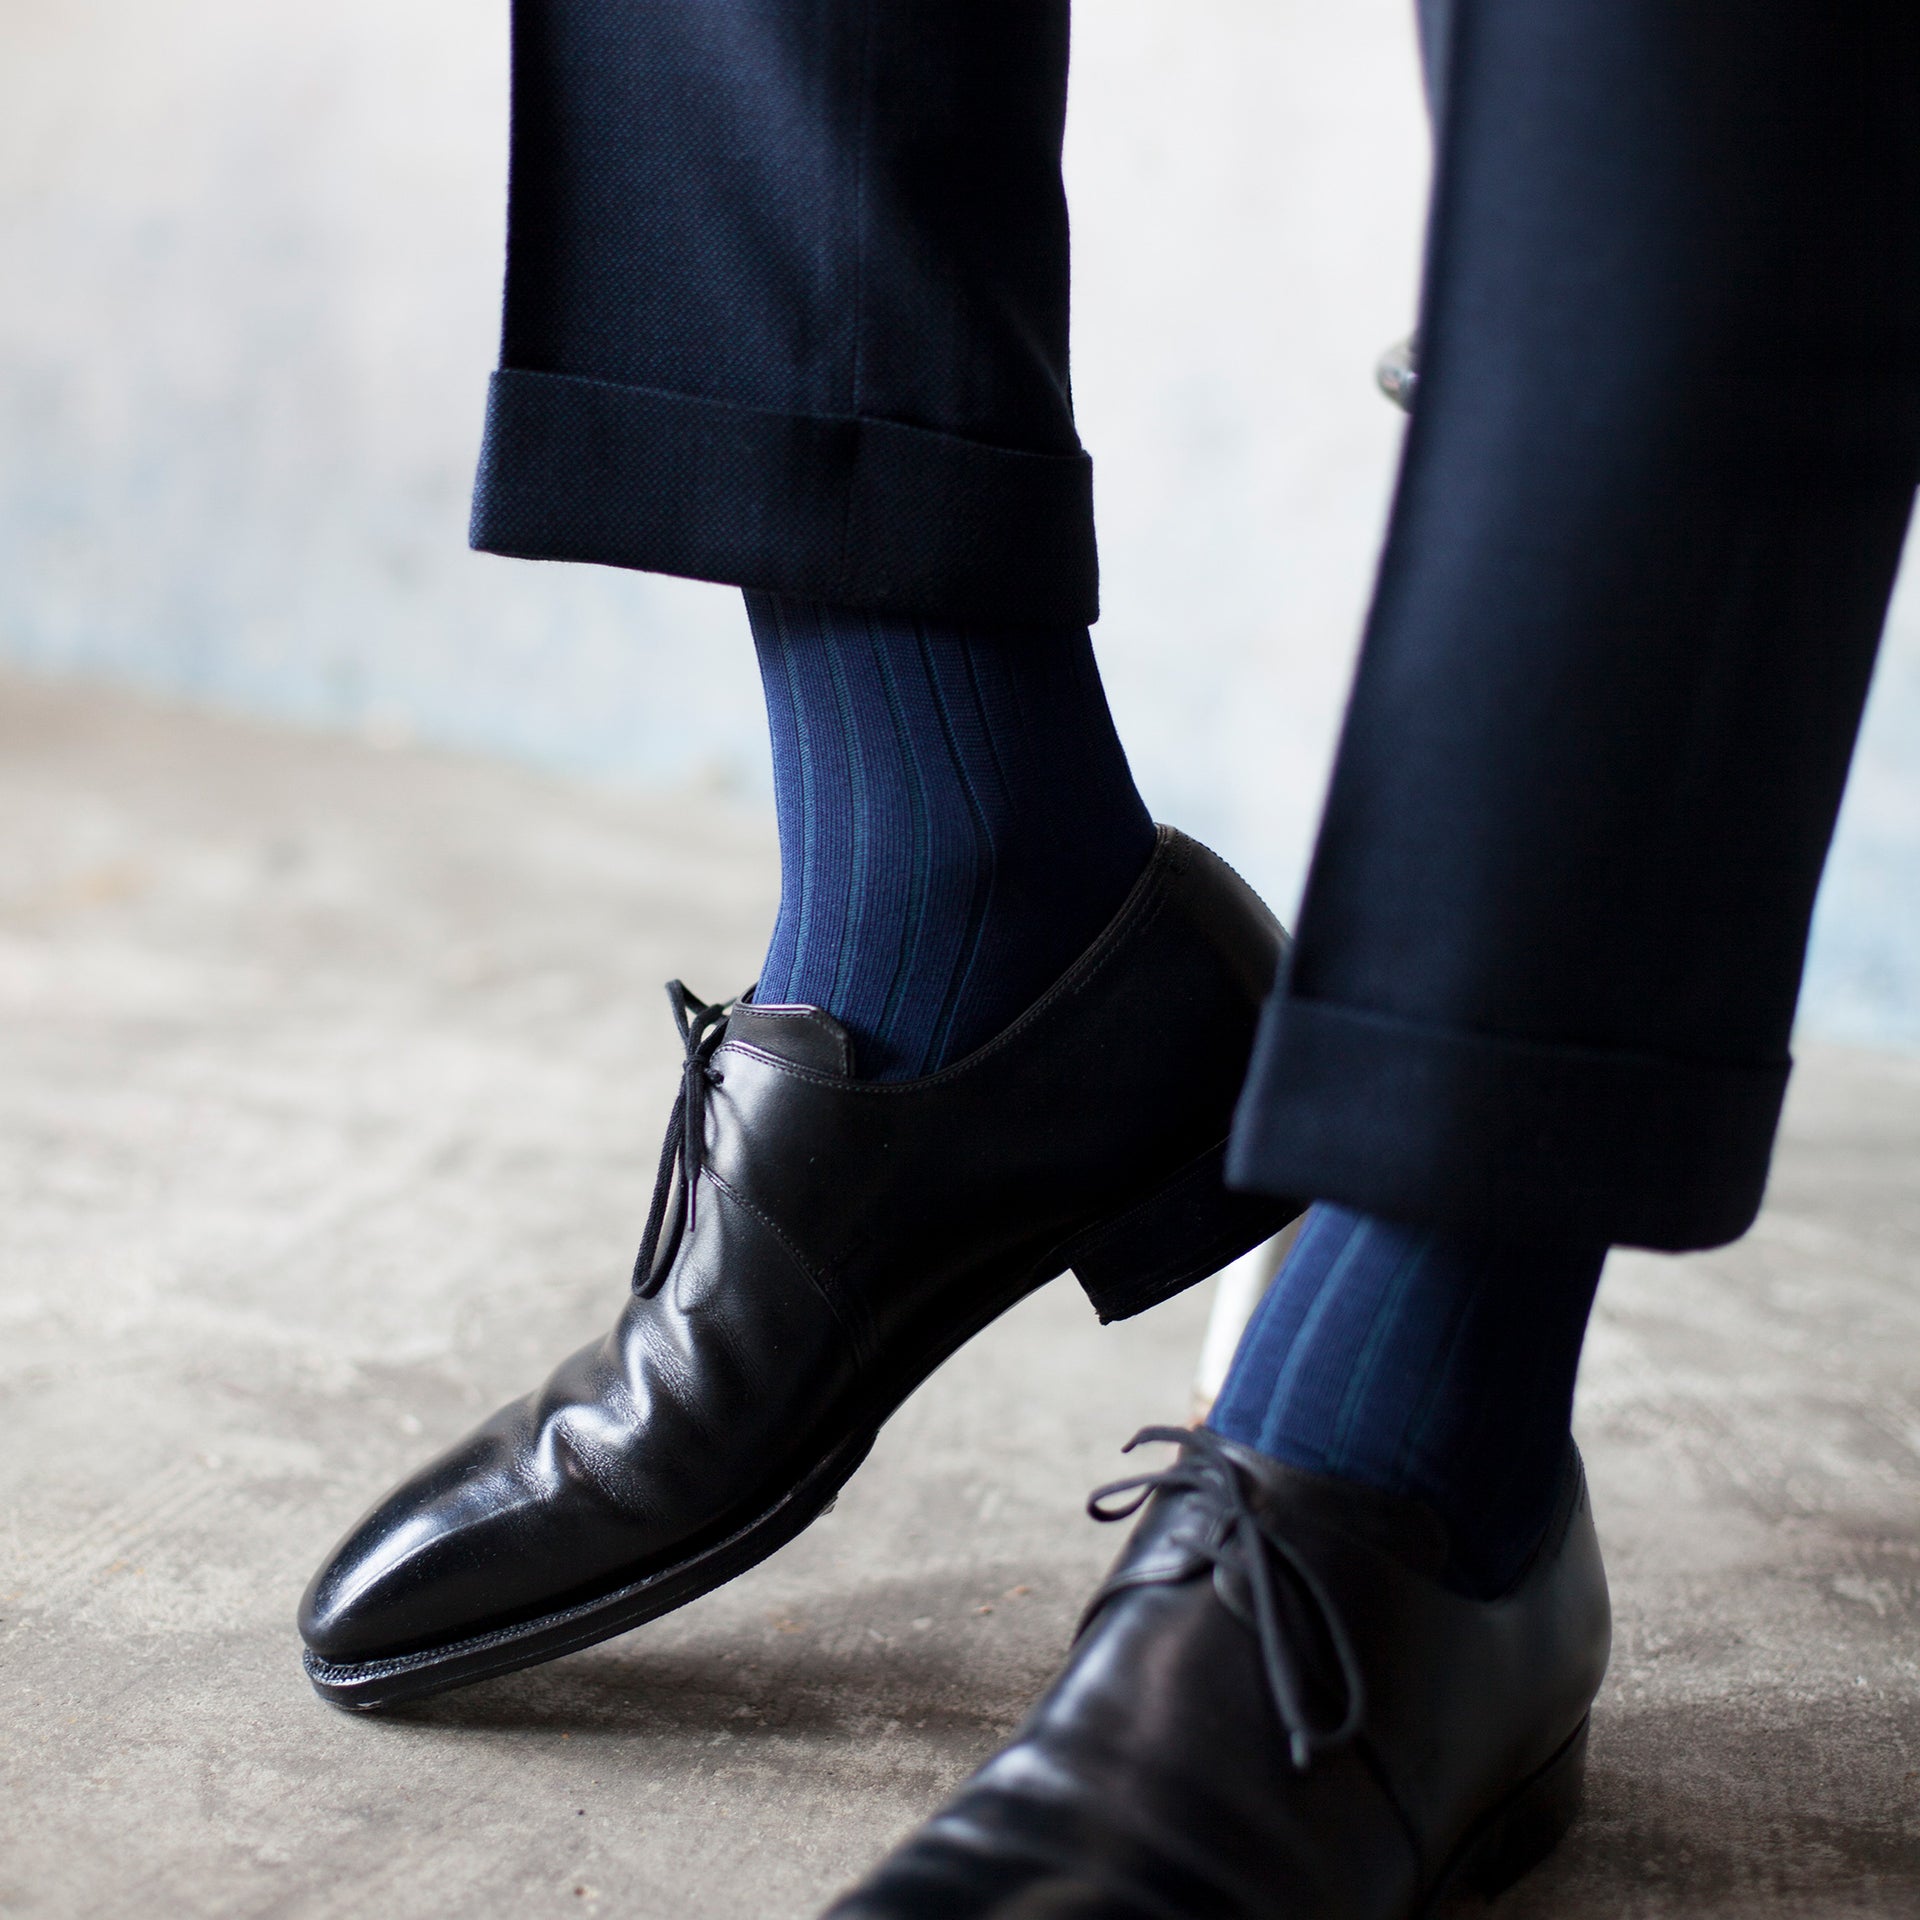 Men's Two-Tone Ribbed Socks - Navy & Blue – Votta Socks